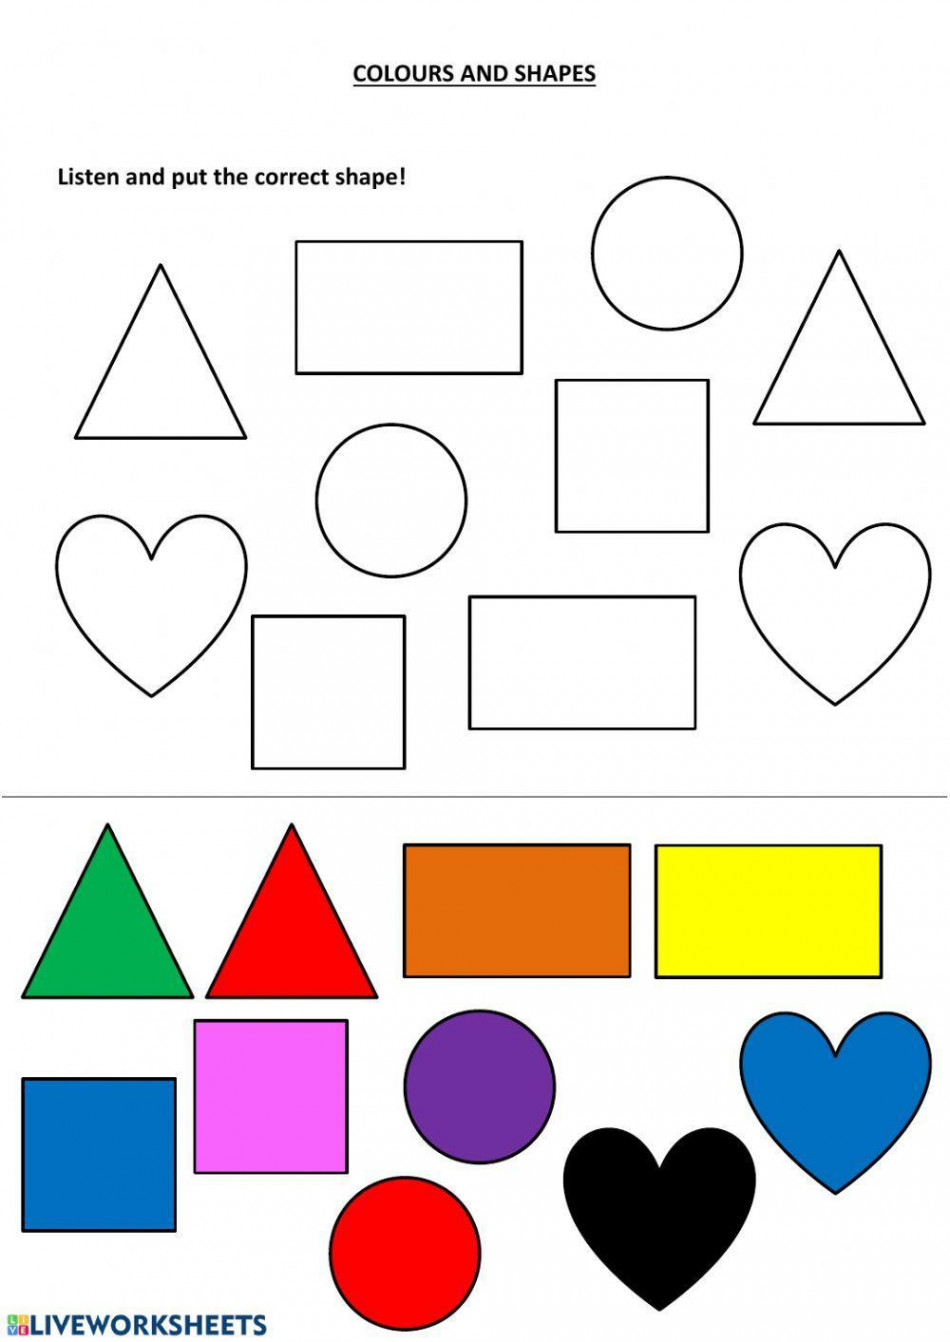 Colors and Shapes worksheet  Live Worksheets